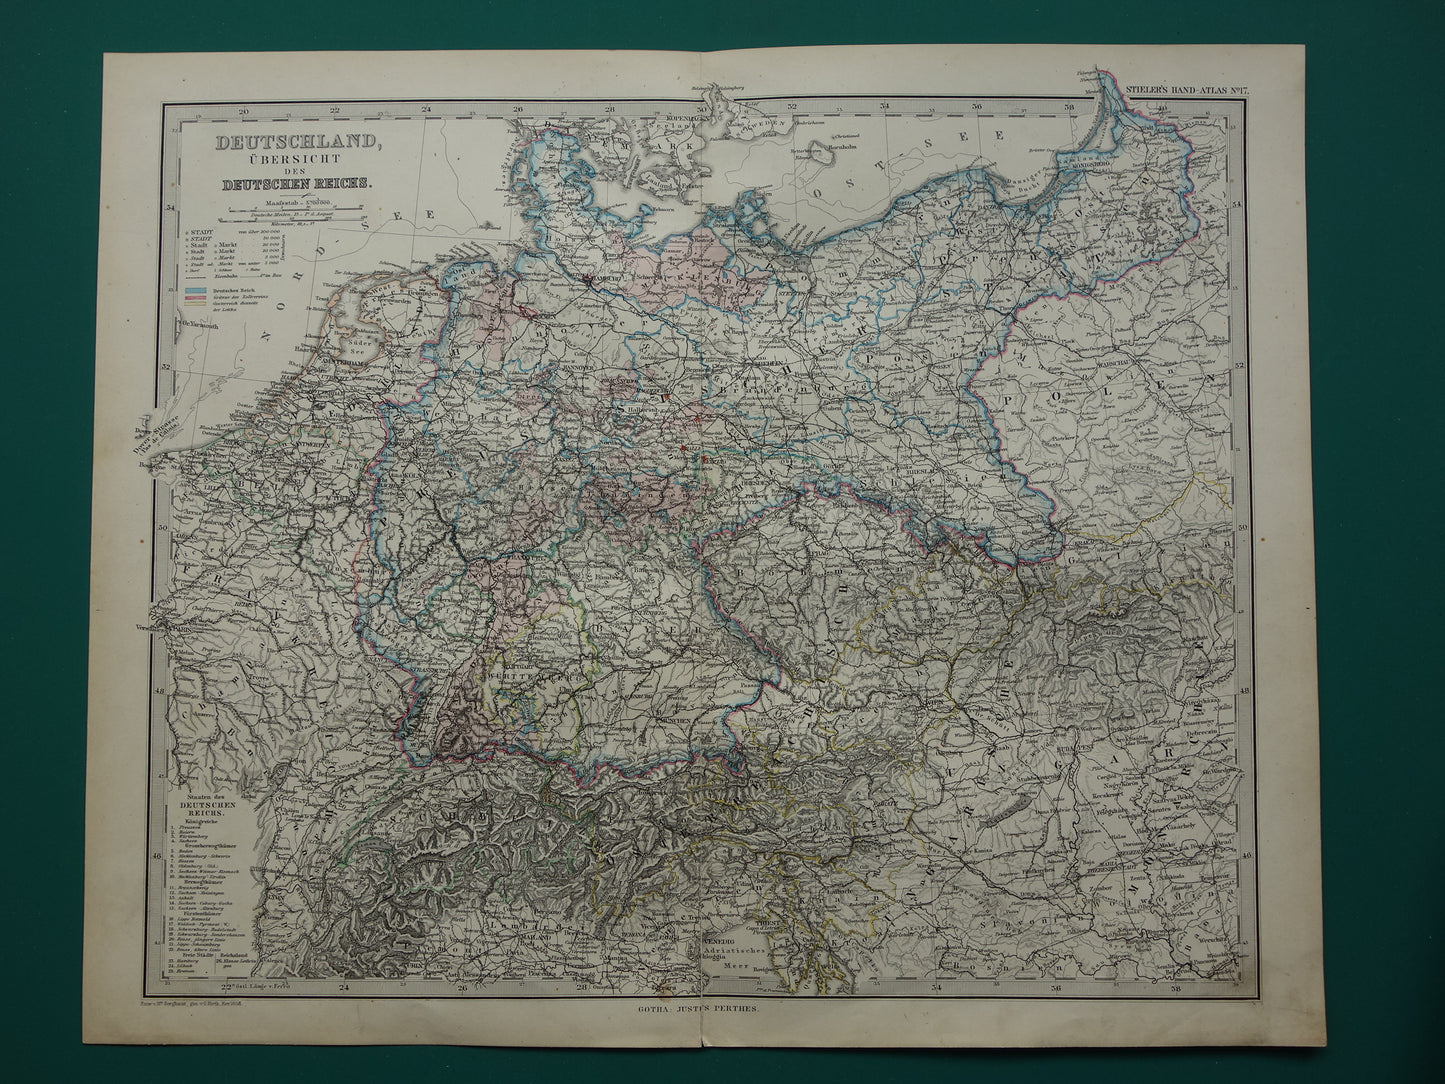 DUITSLAND Antieke landkaart van het Duitse Rijk in 1886 Grote originele 135+ jaar oude kaart Berlijn Pruissen Polen